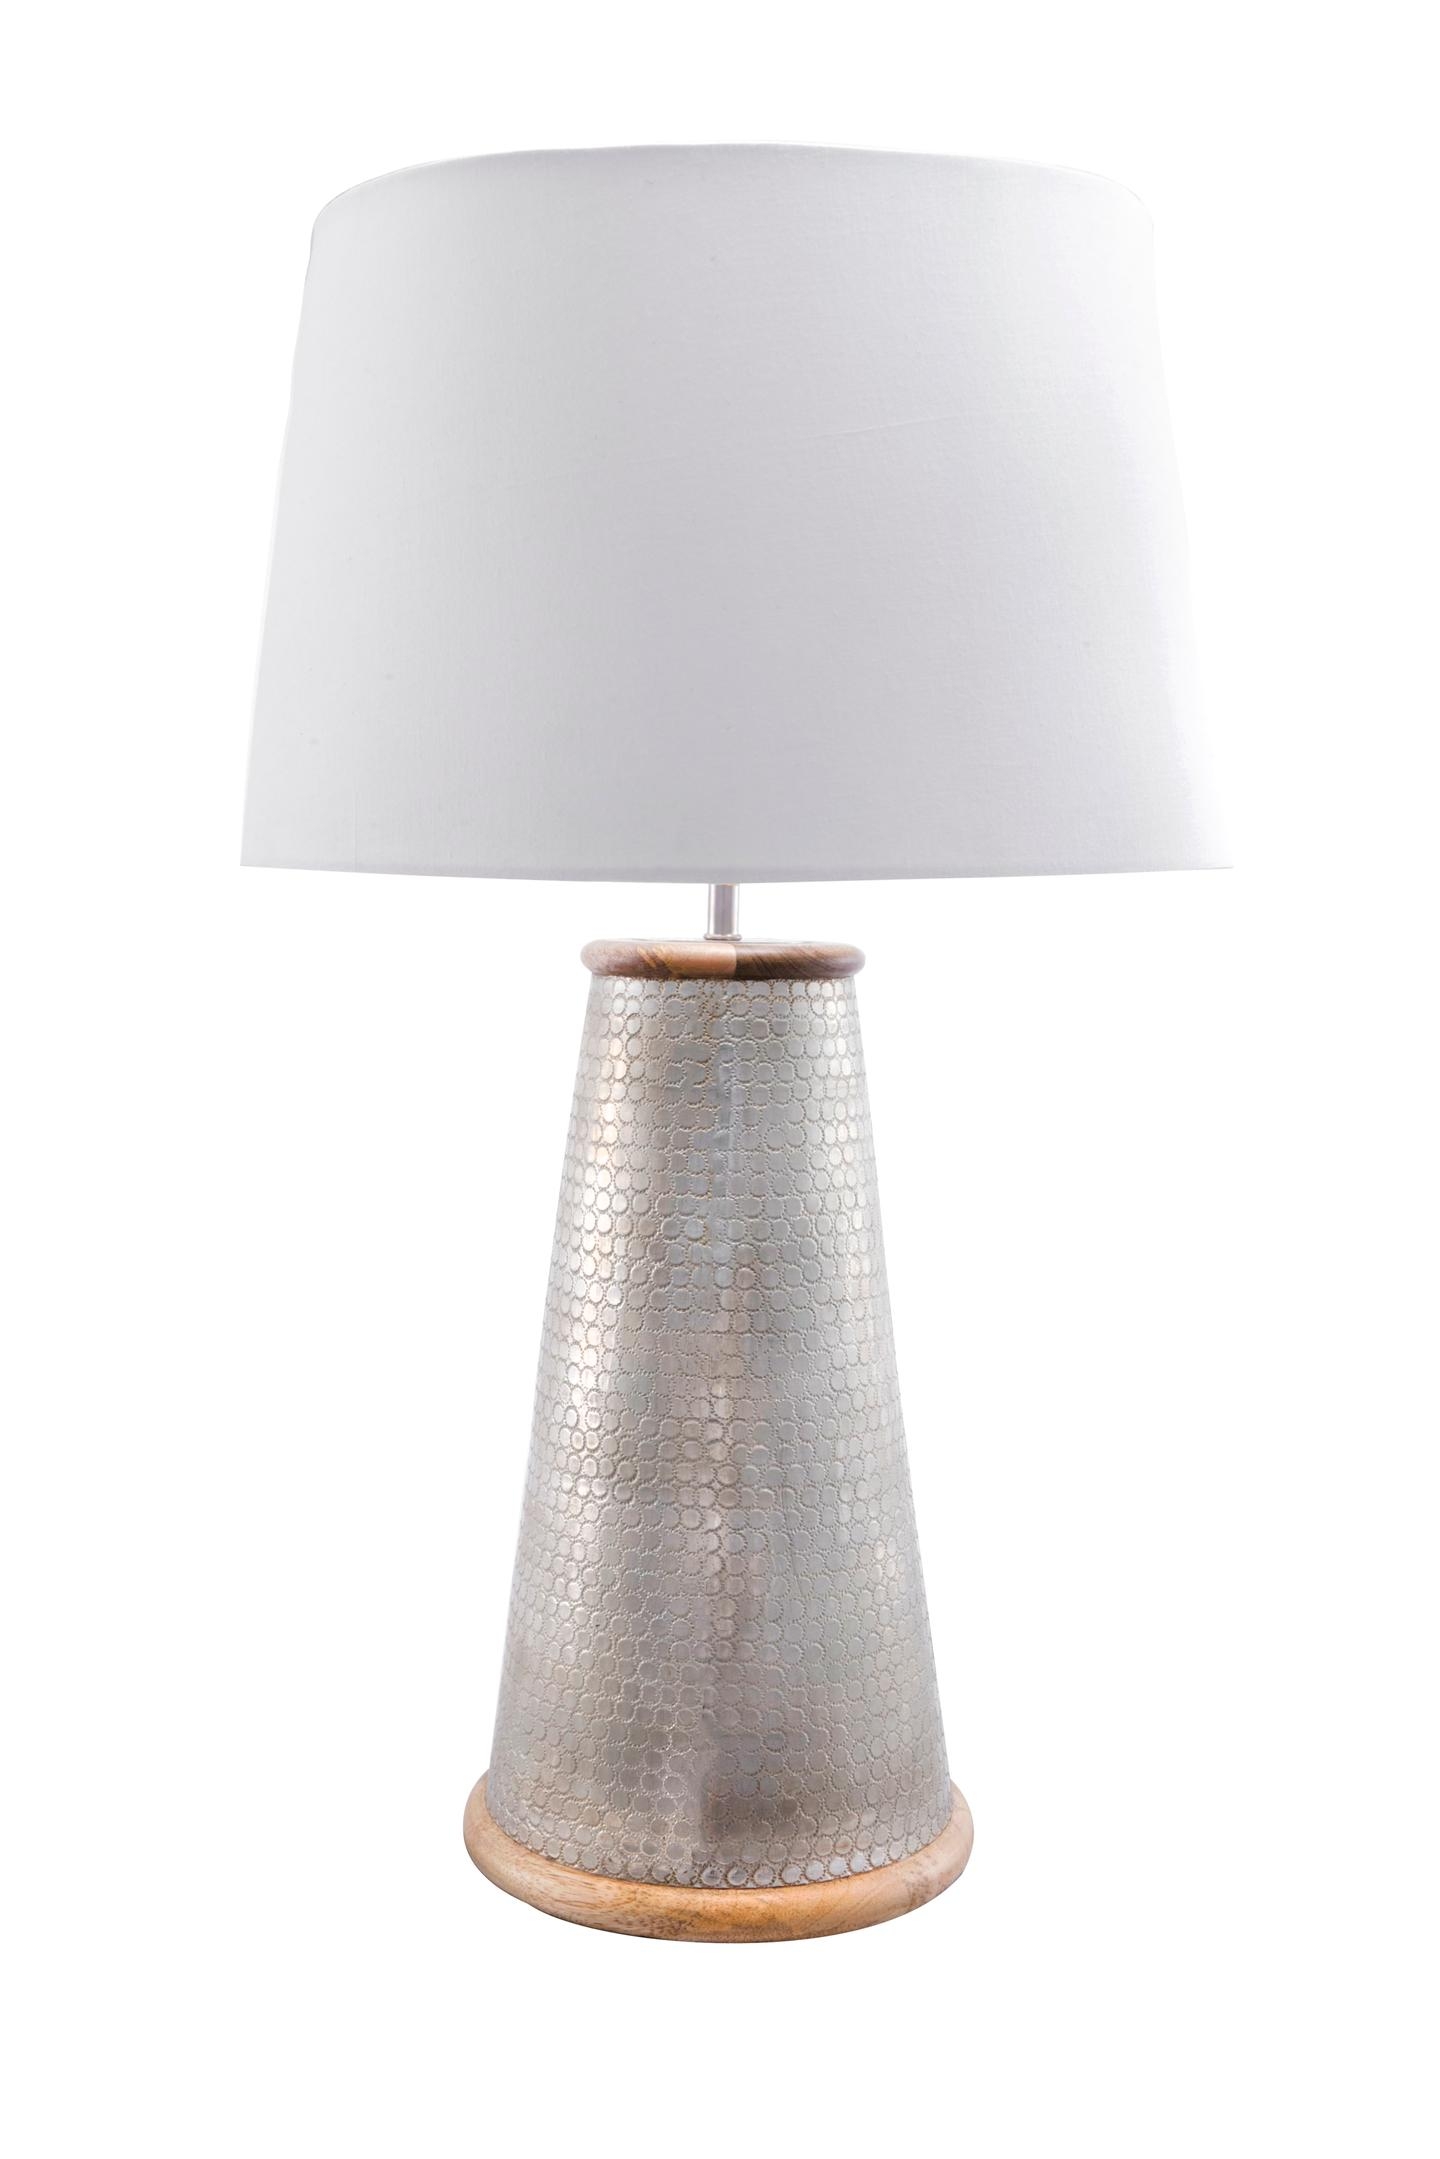 Delano 25" Metal & Wood Table Lamp - Image 1